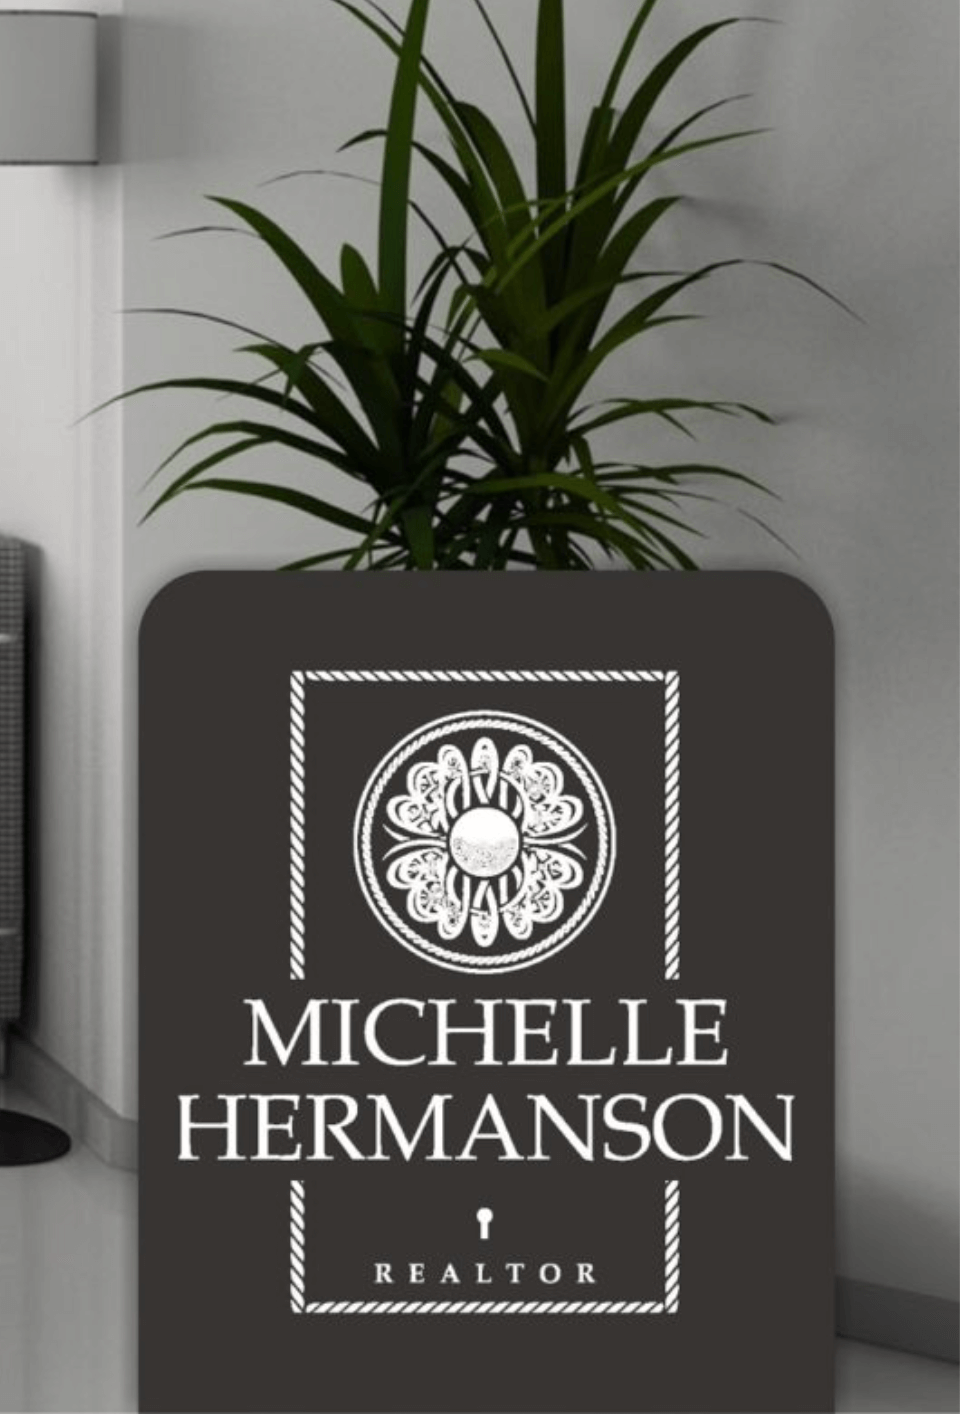 MIchelle-Hermanson-logo